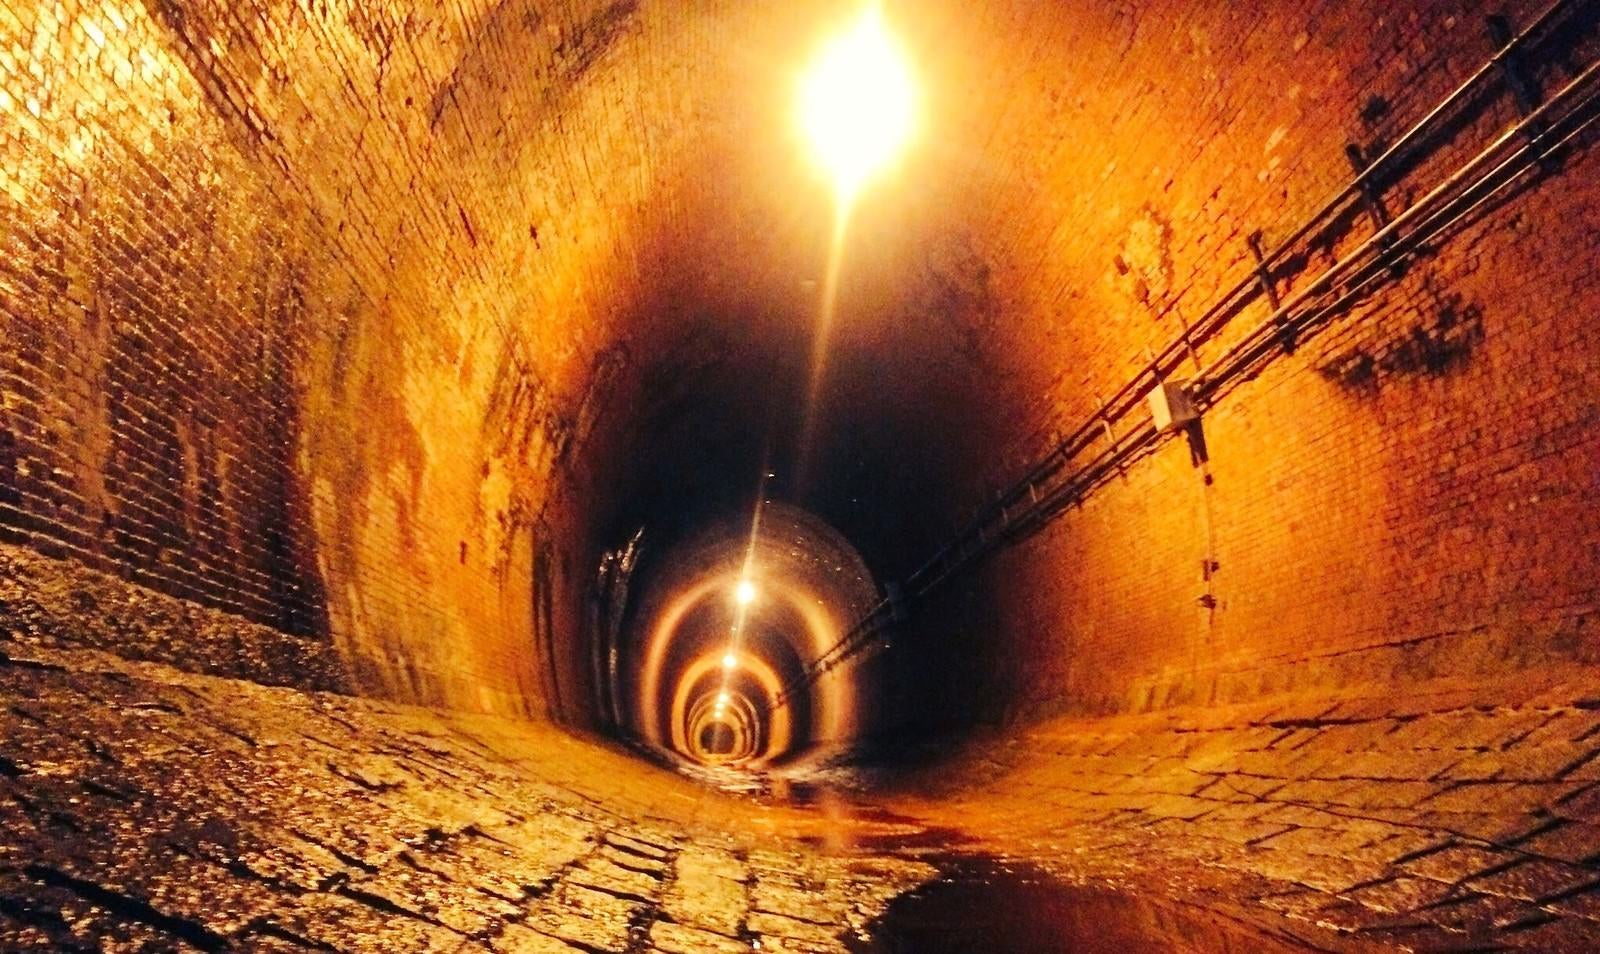 「おどろおどろしく煌々と光るトンネル（湊川隧道：みなとがわずいどう）」の写真